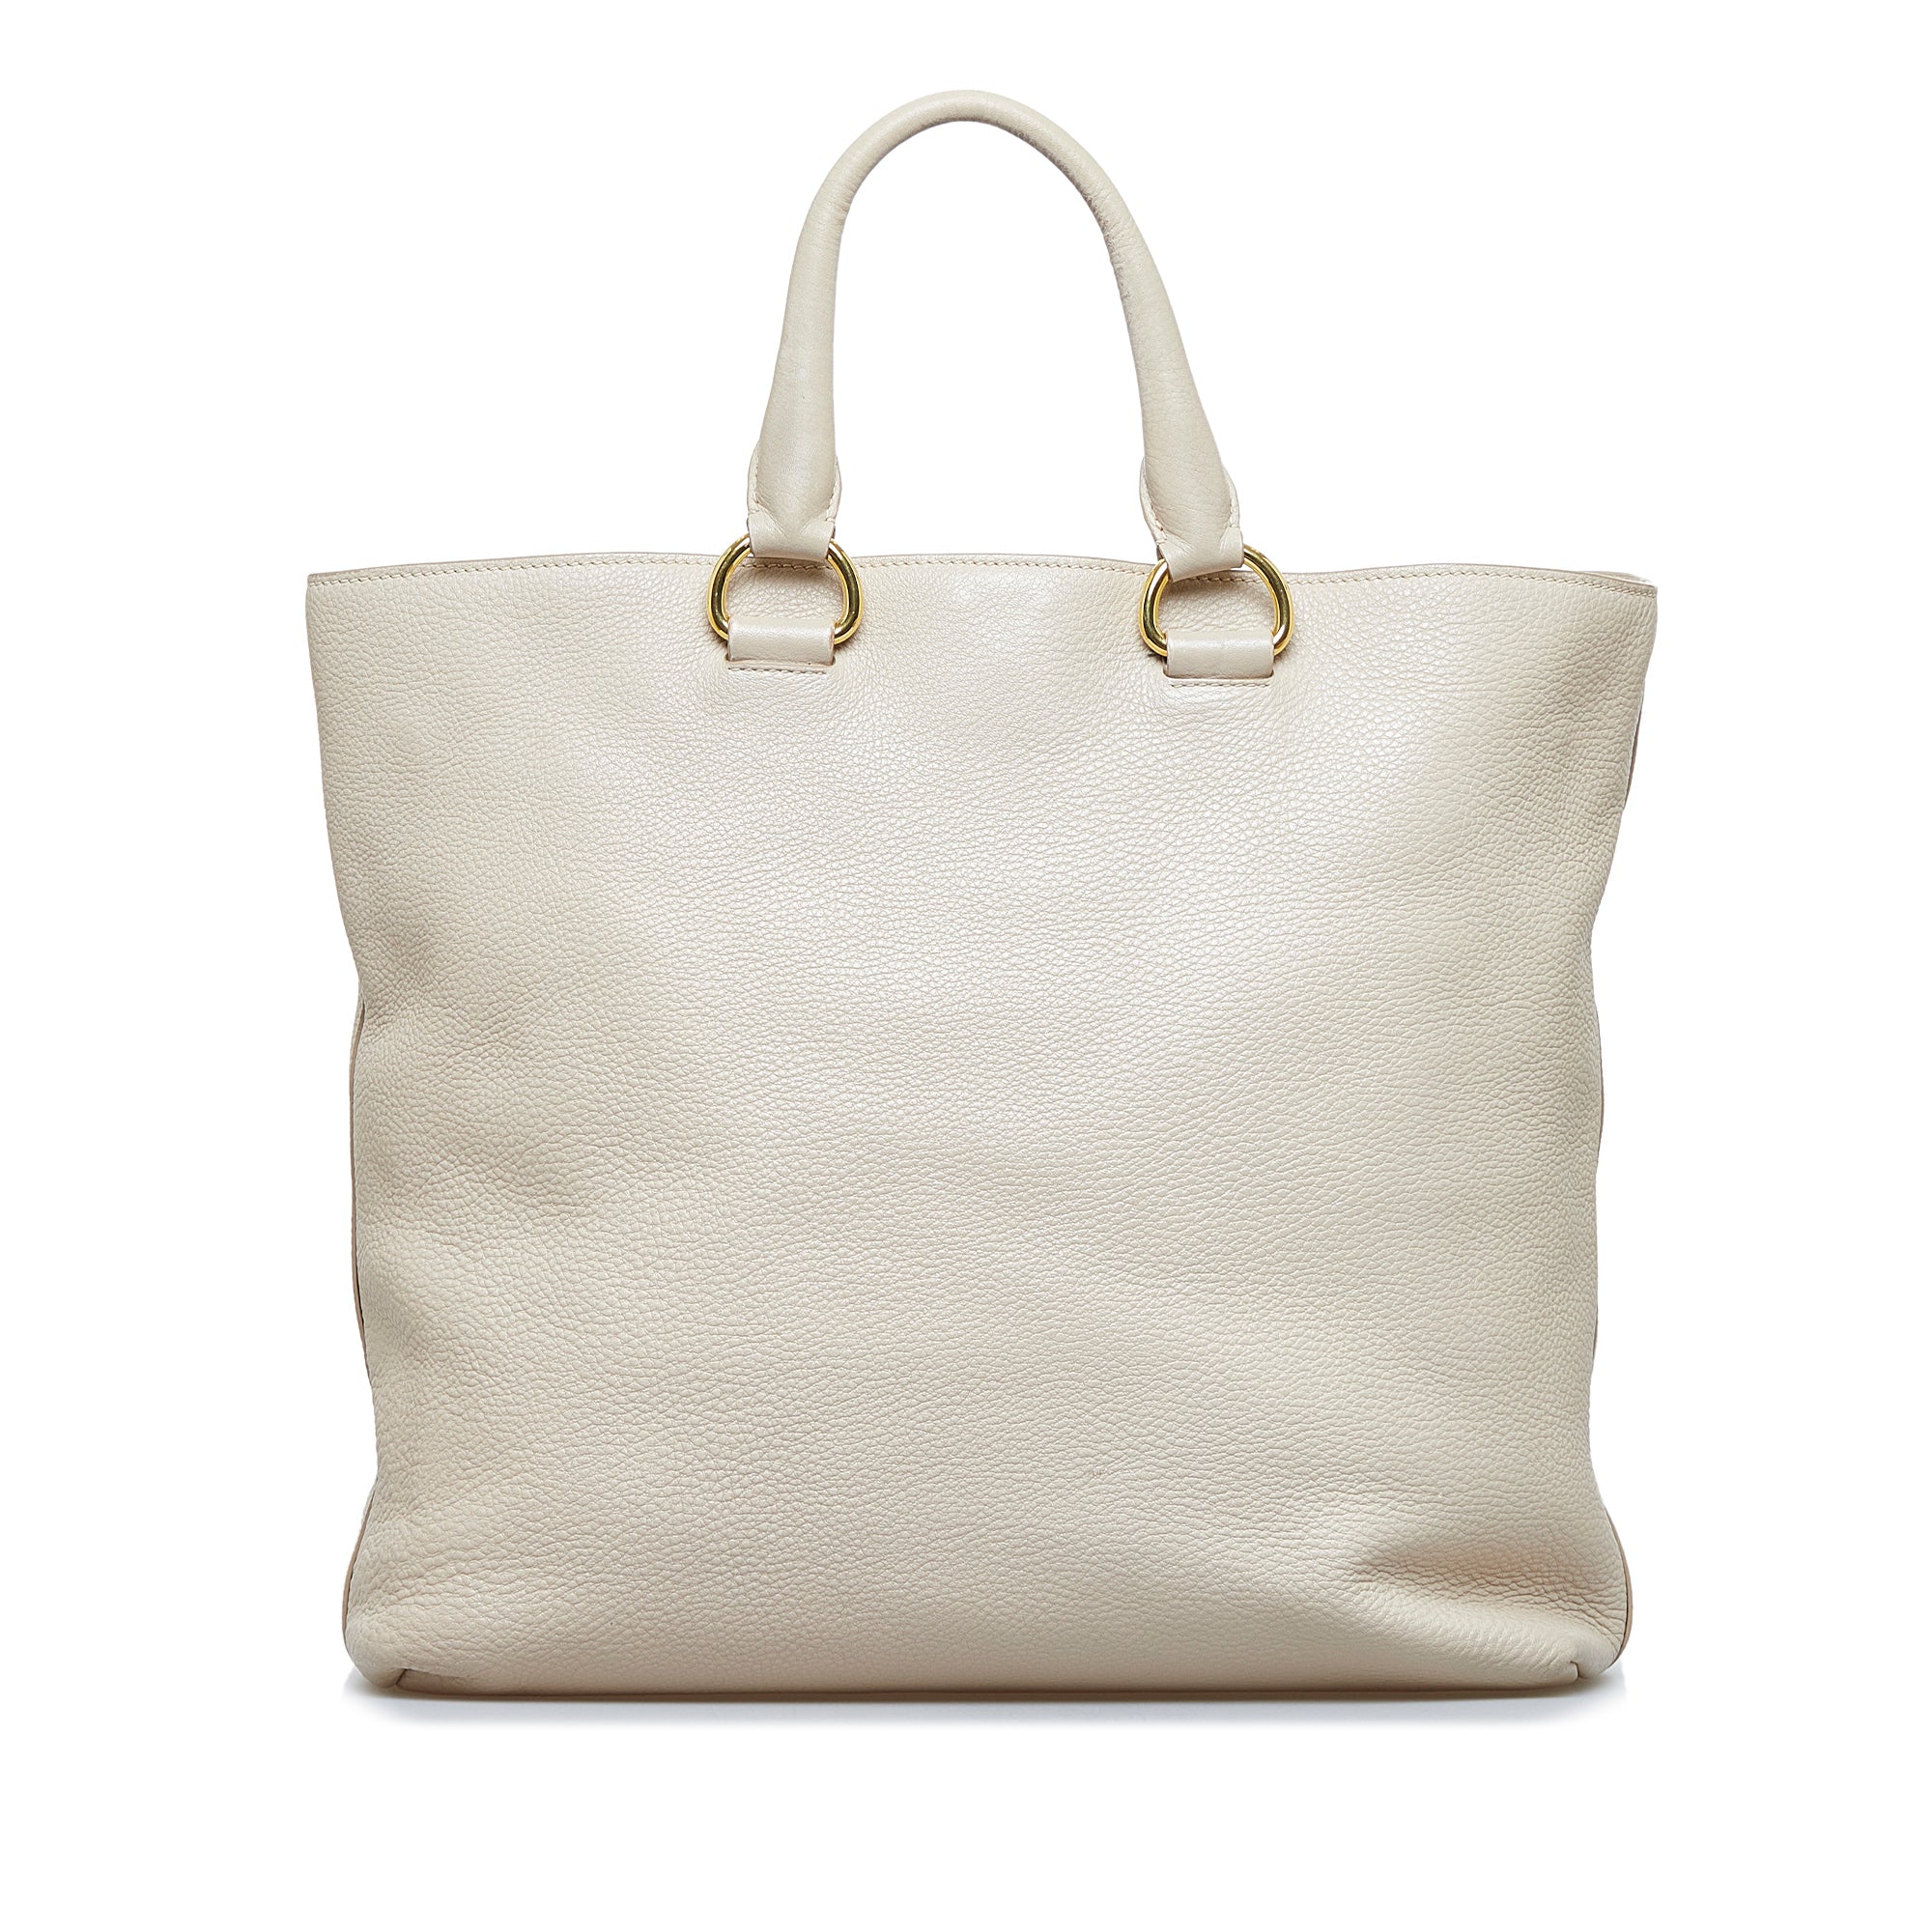 Prada Grey Vitello Daino Leather Shopping Tote Bag